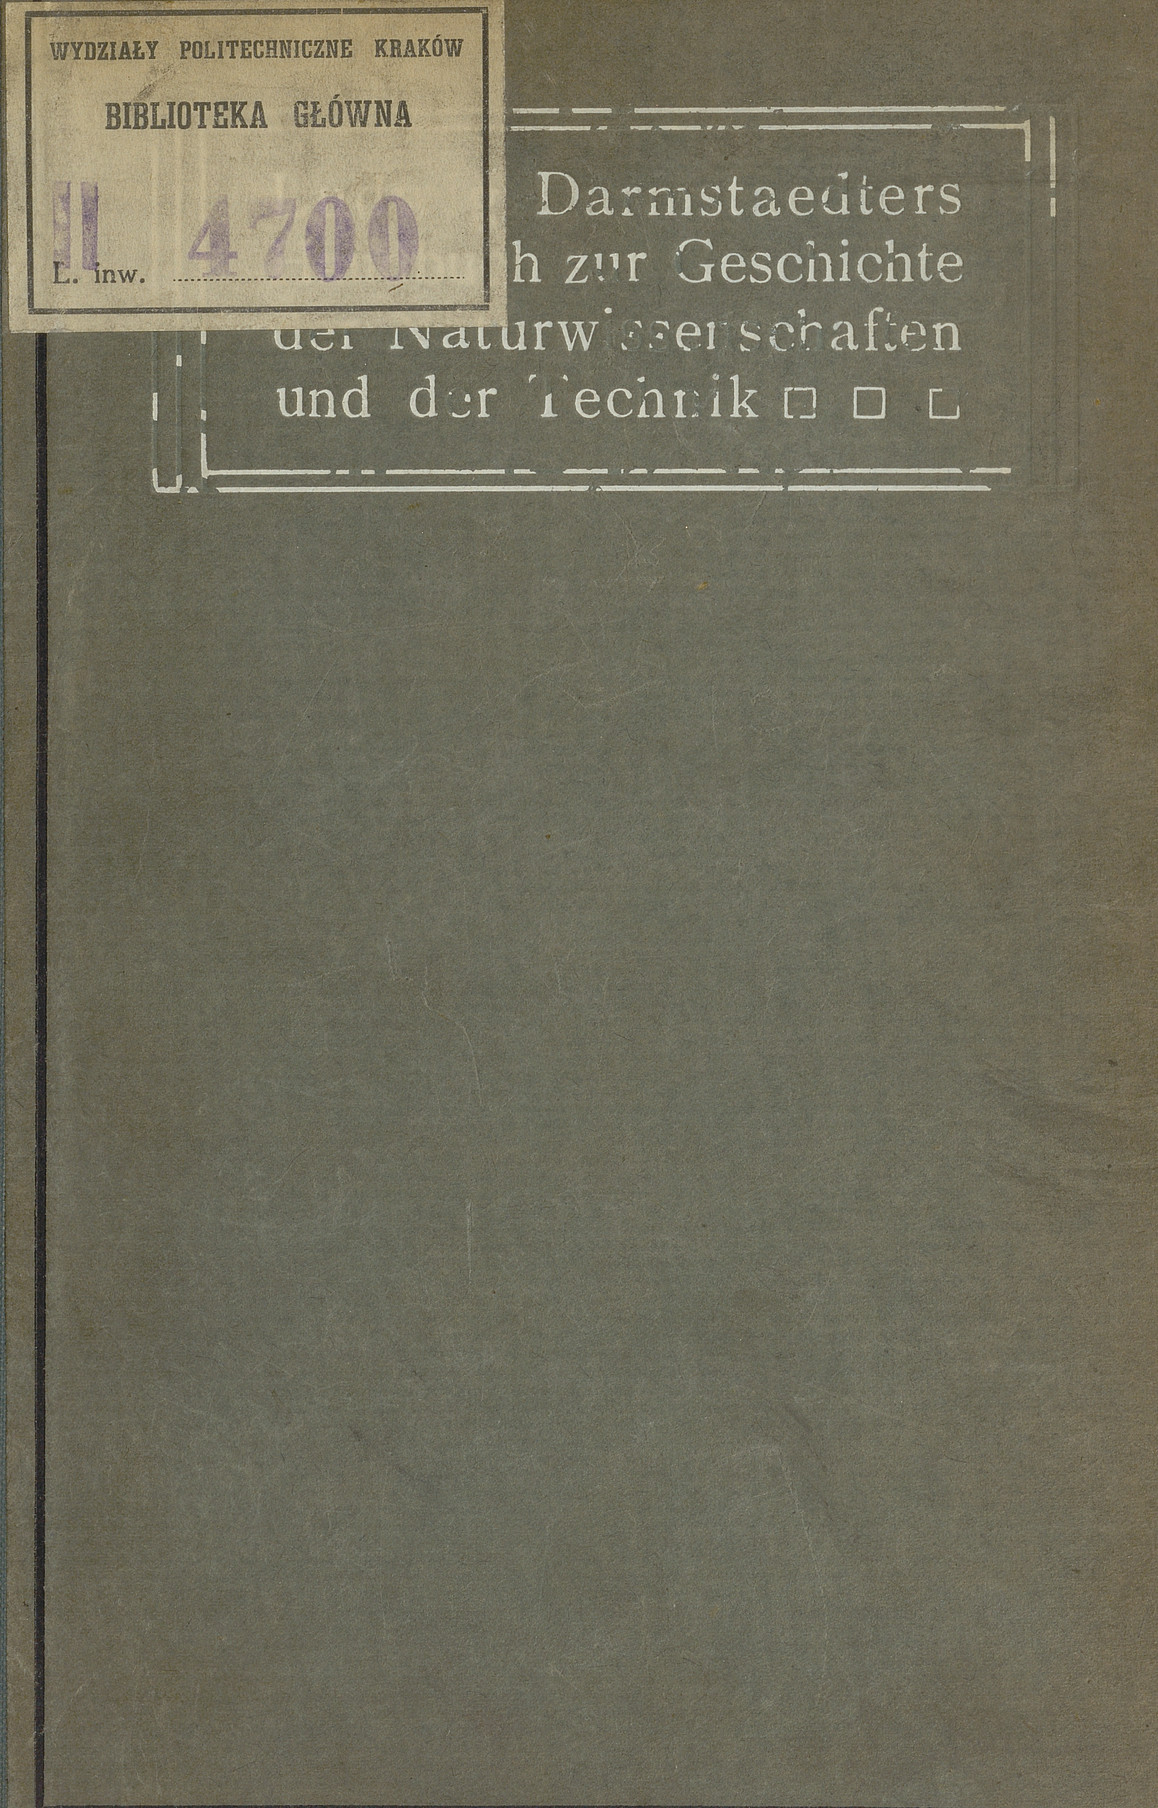 Ludwig Darmstaedters Handbuch zur Geschichte der Naturwissenschaften und der Technik : in chronologischer Darstellung